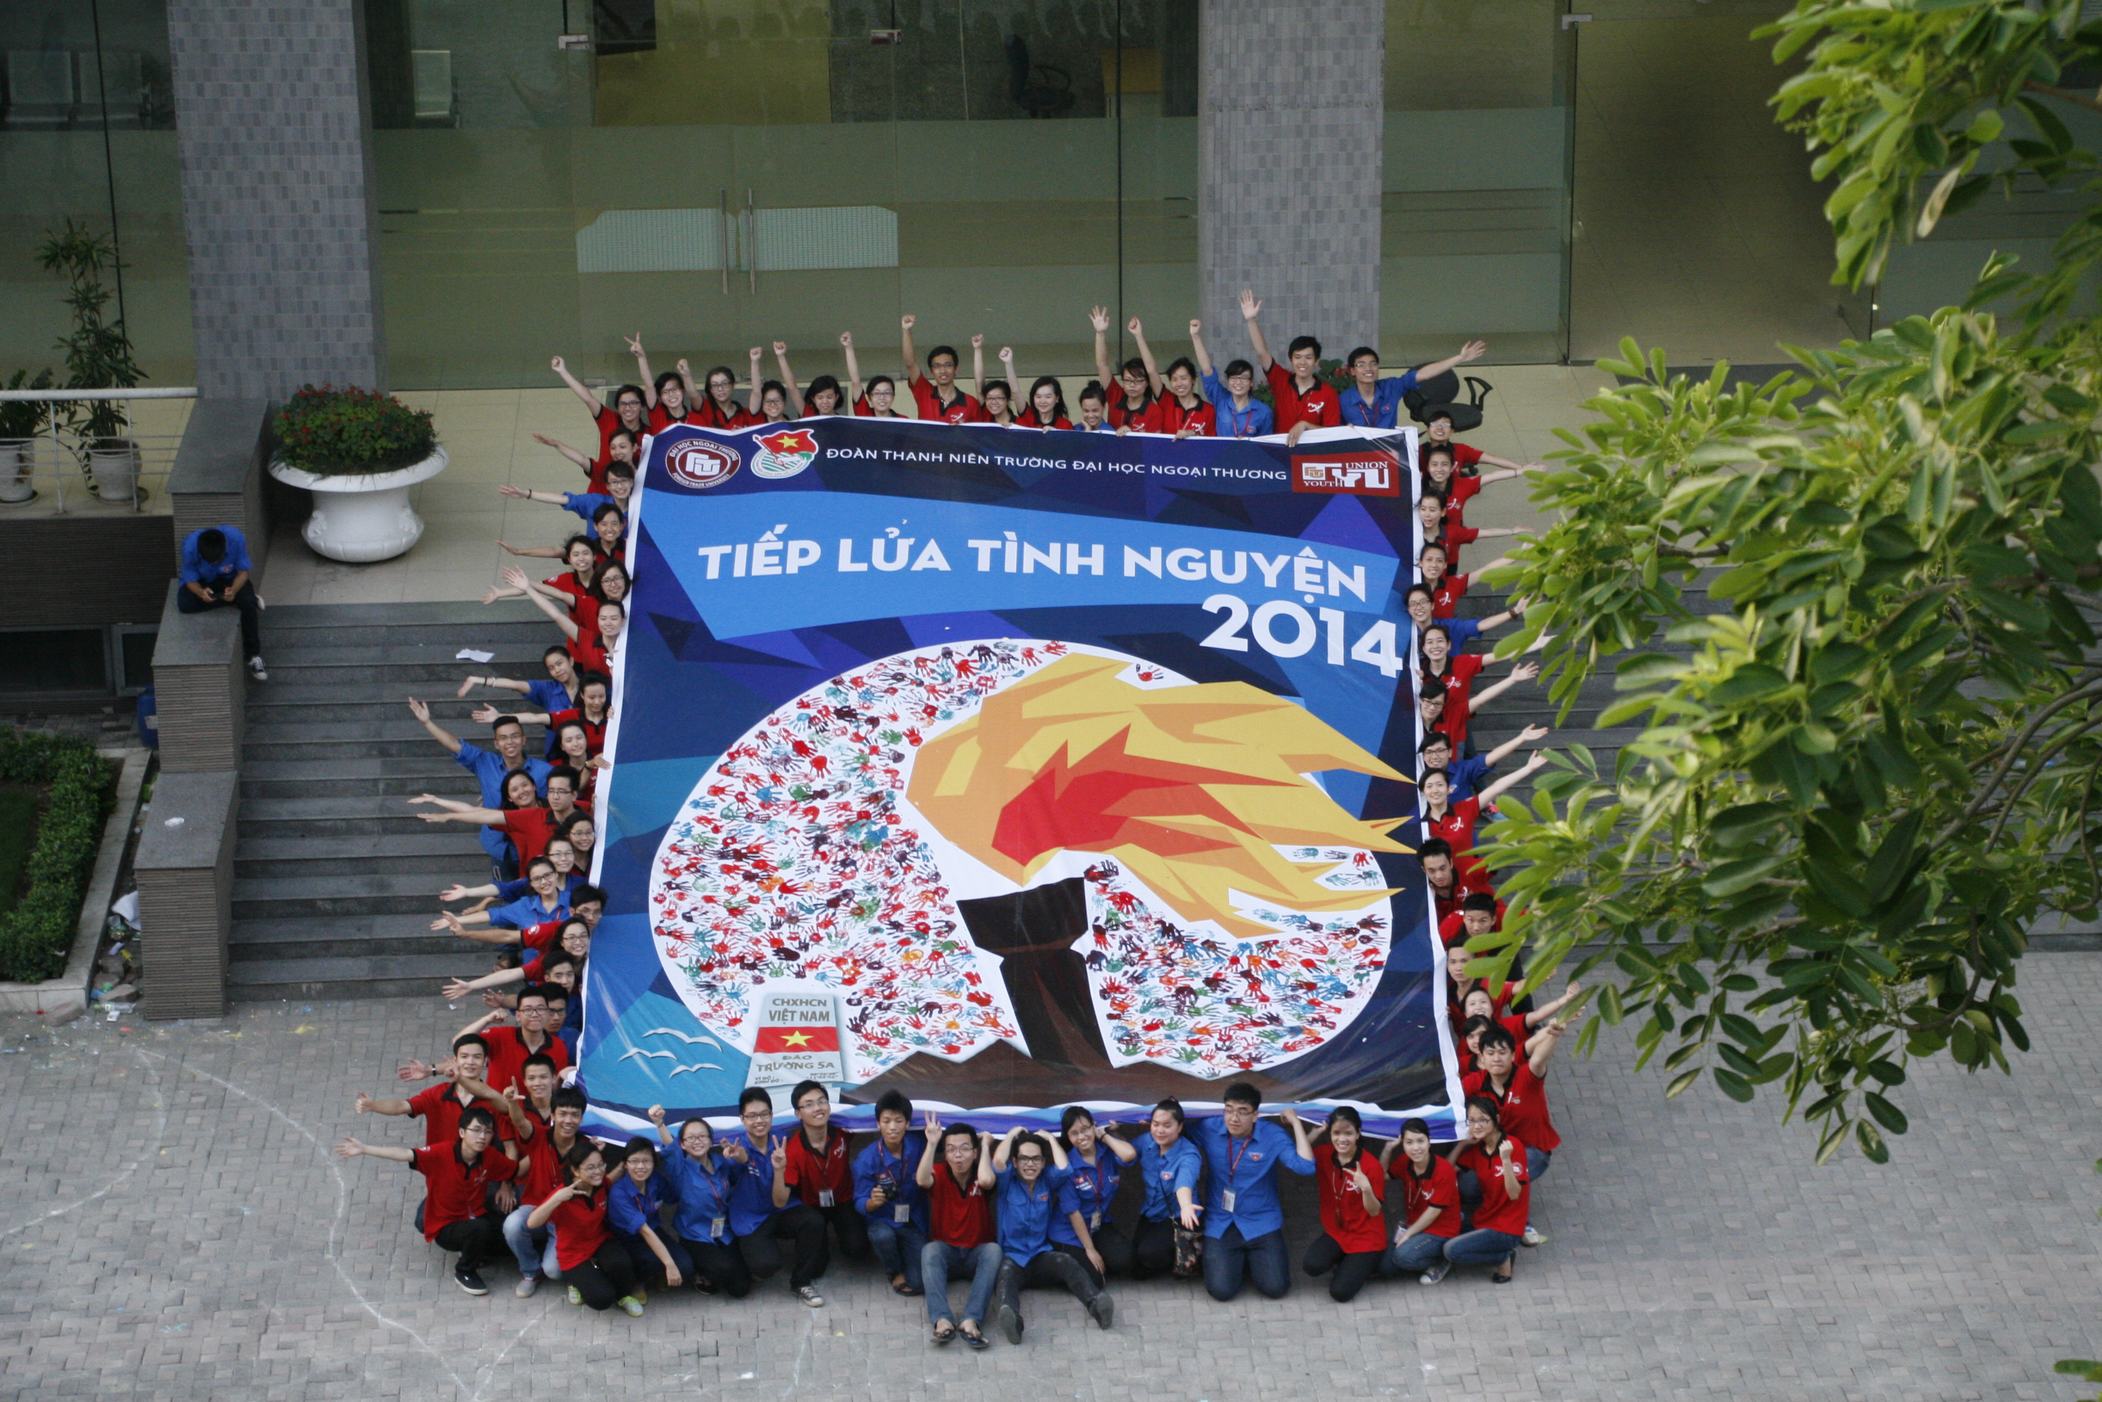 Sinh viên Ngoại Thương cùng chung tay tạo nên bức tranh Tiếp lửa tình nguyện